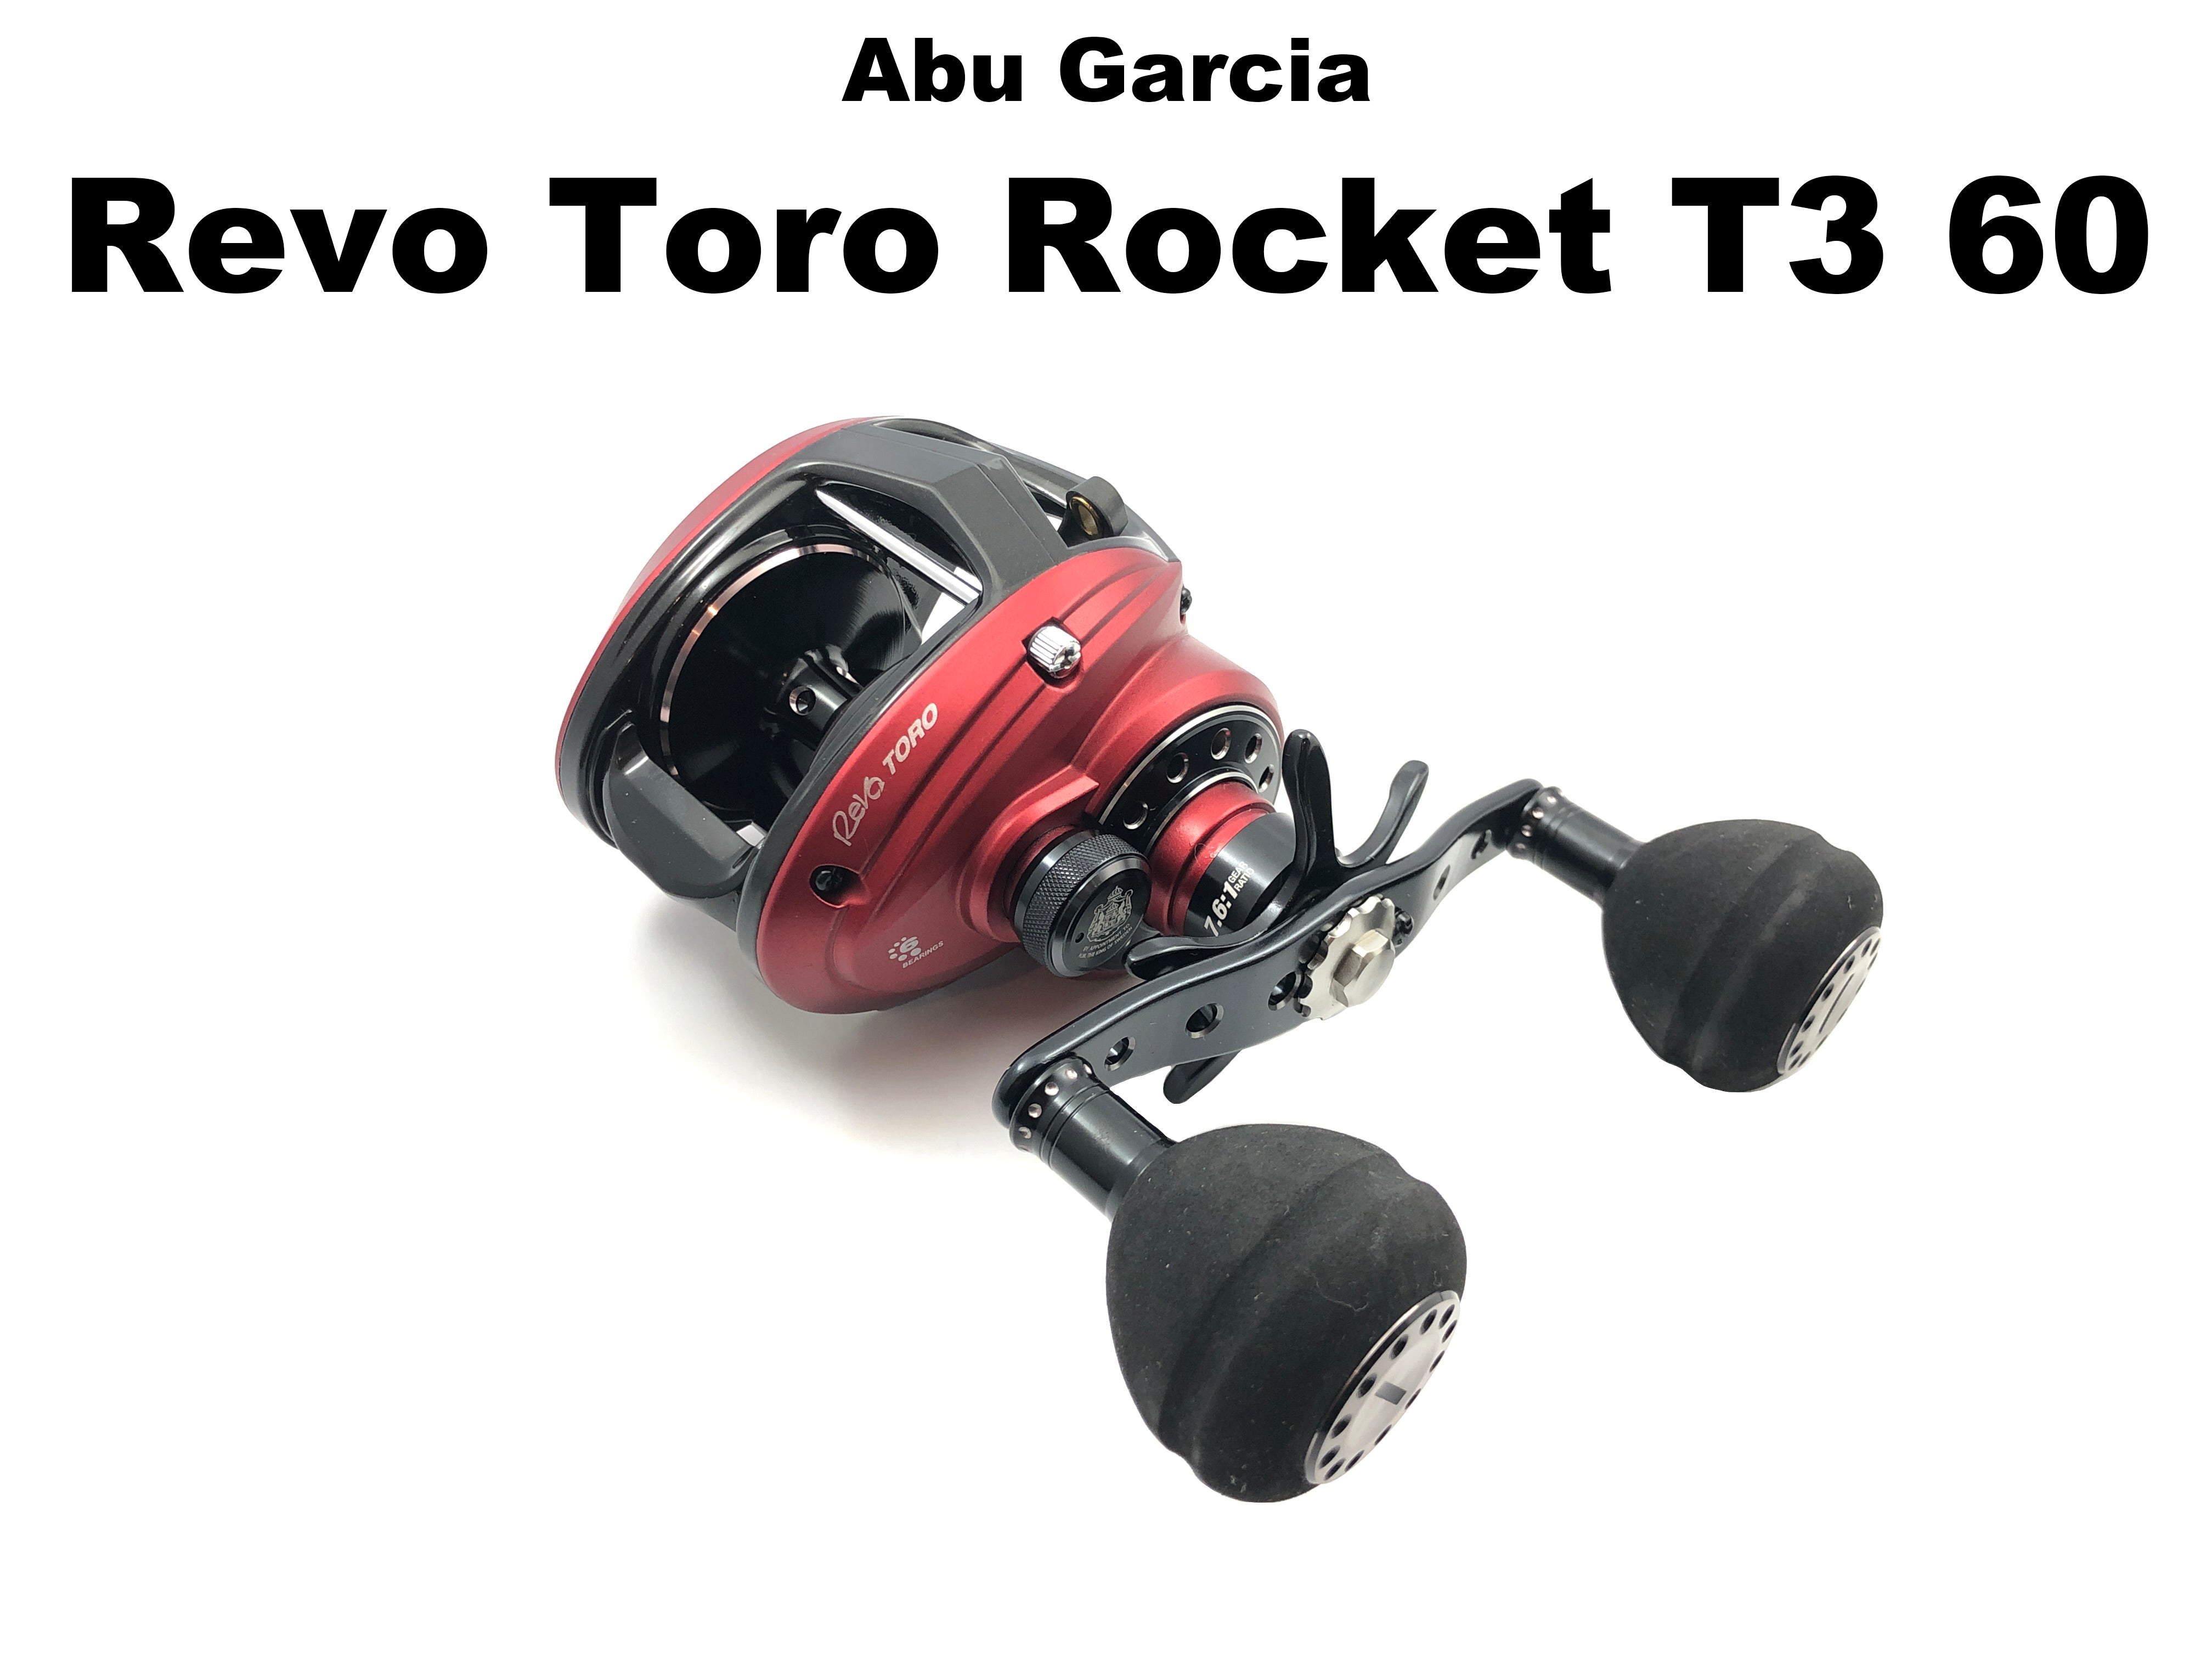 Abu Garcia Revo Toro Rocket T3 60 – Team Rhino Outdoors LLC, abu garcia  rocket